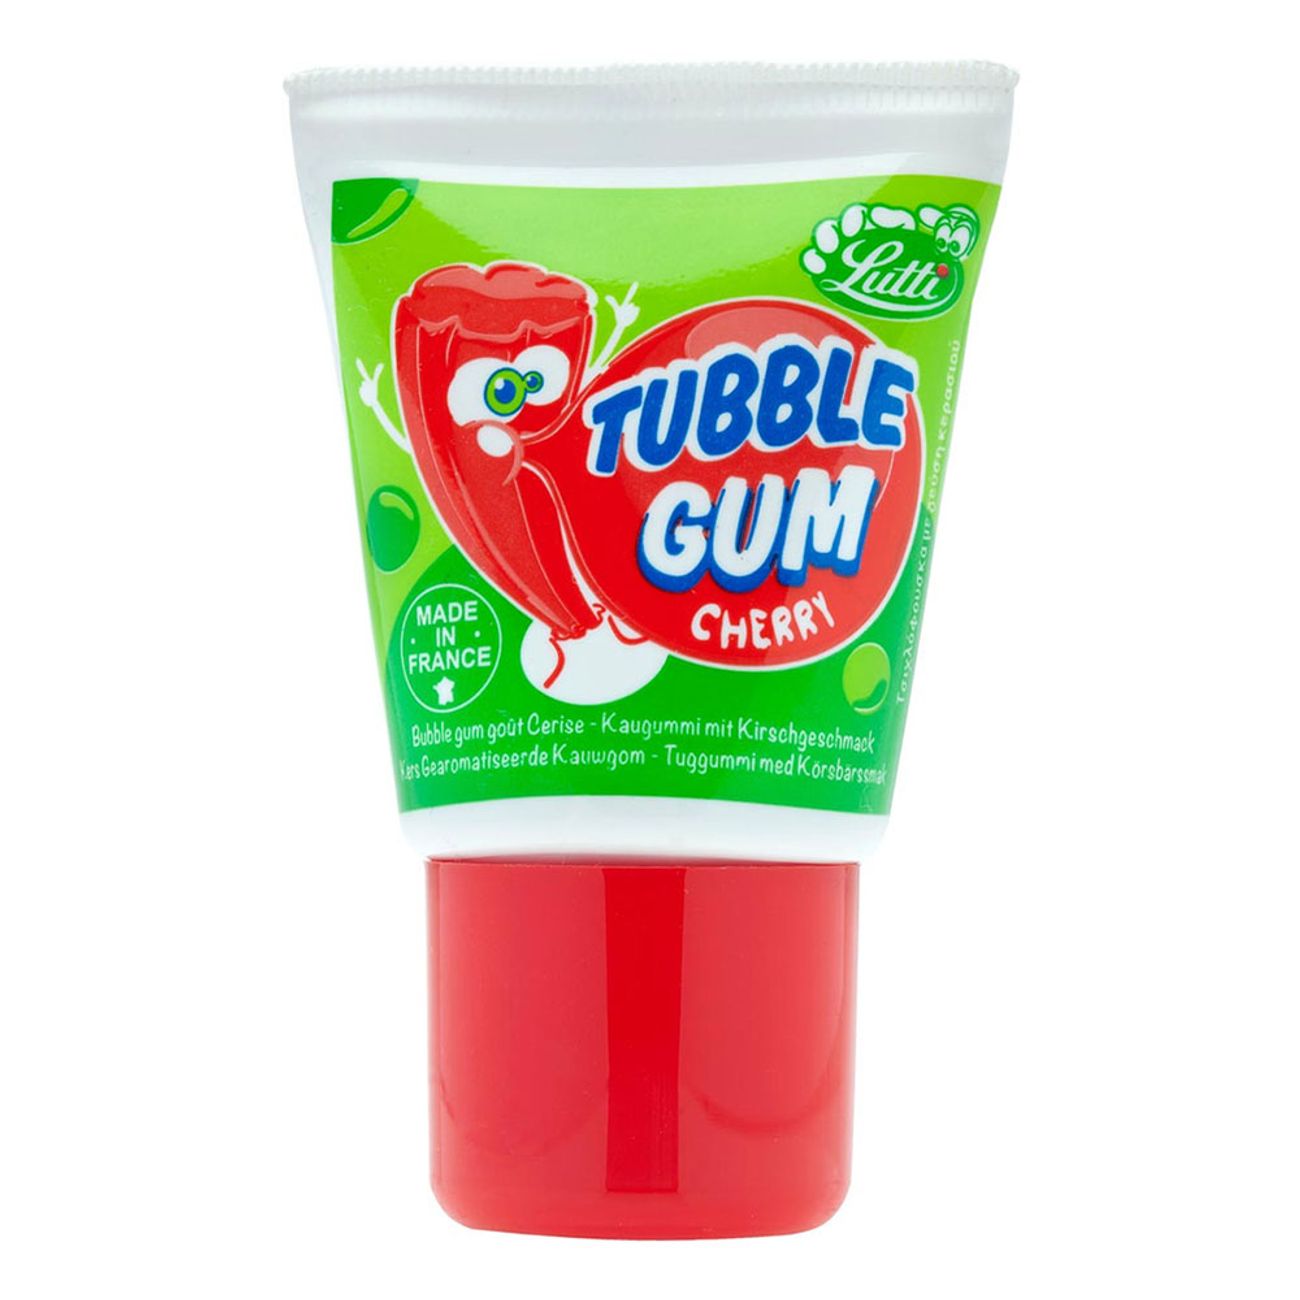 tubble-gum-cherry-86485-3